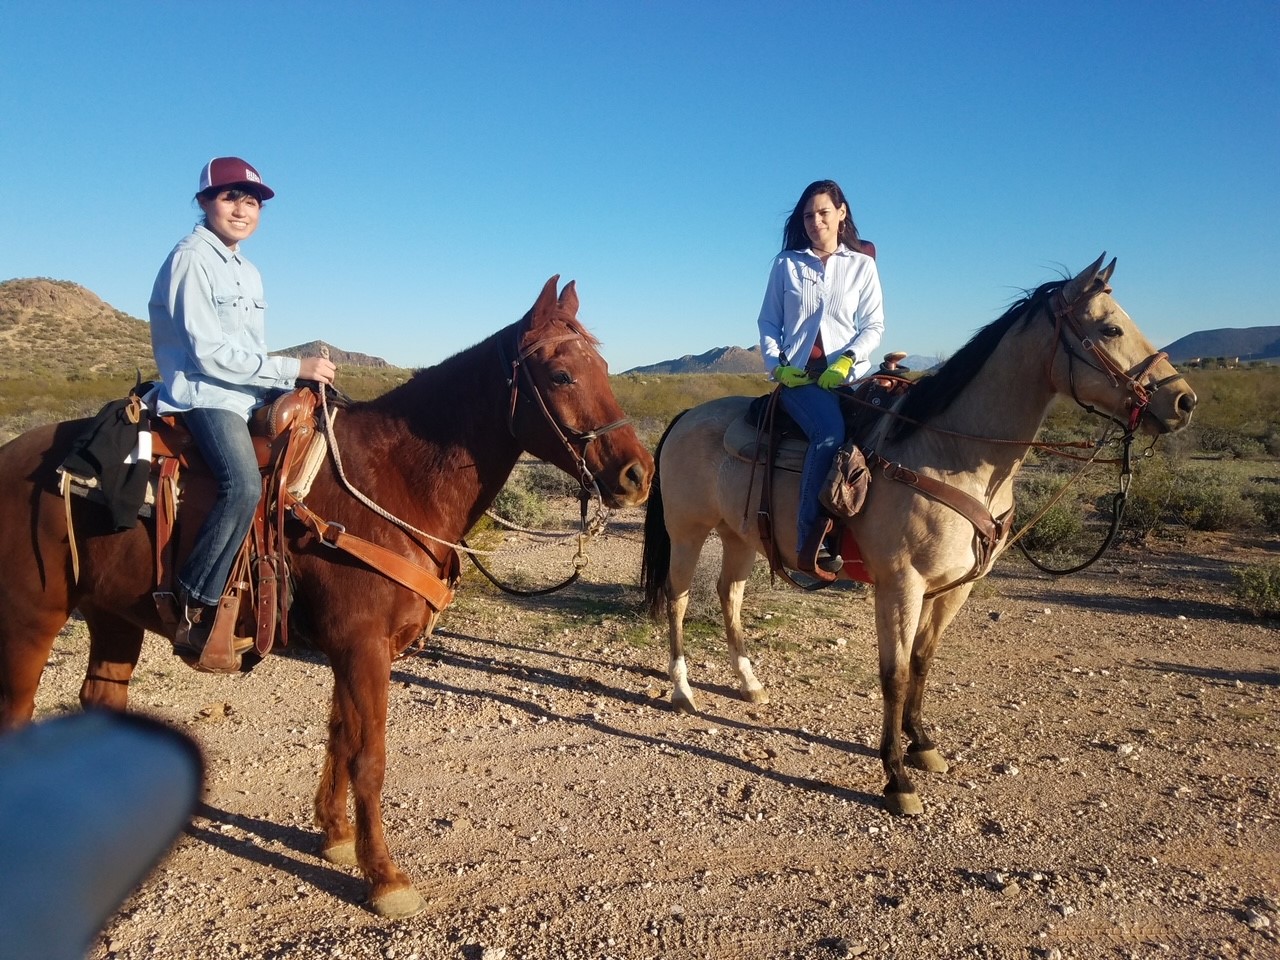 Denise and daughter on horseback